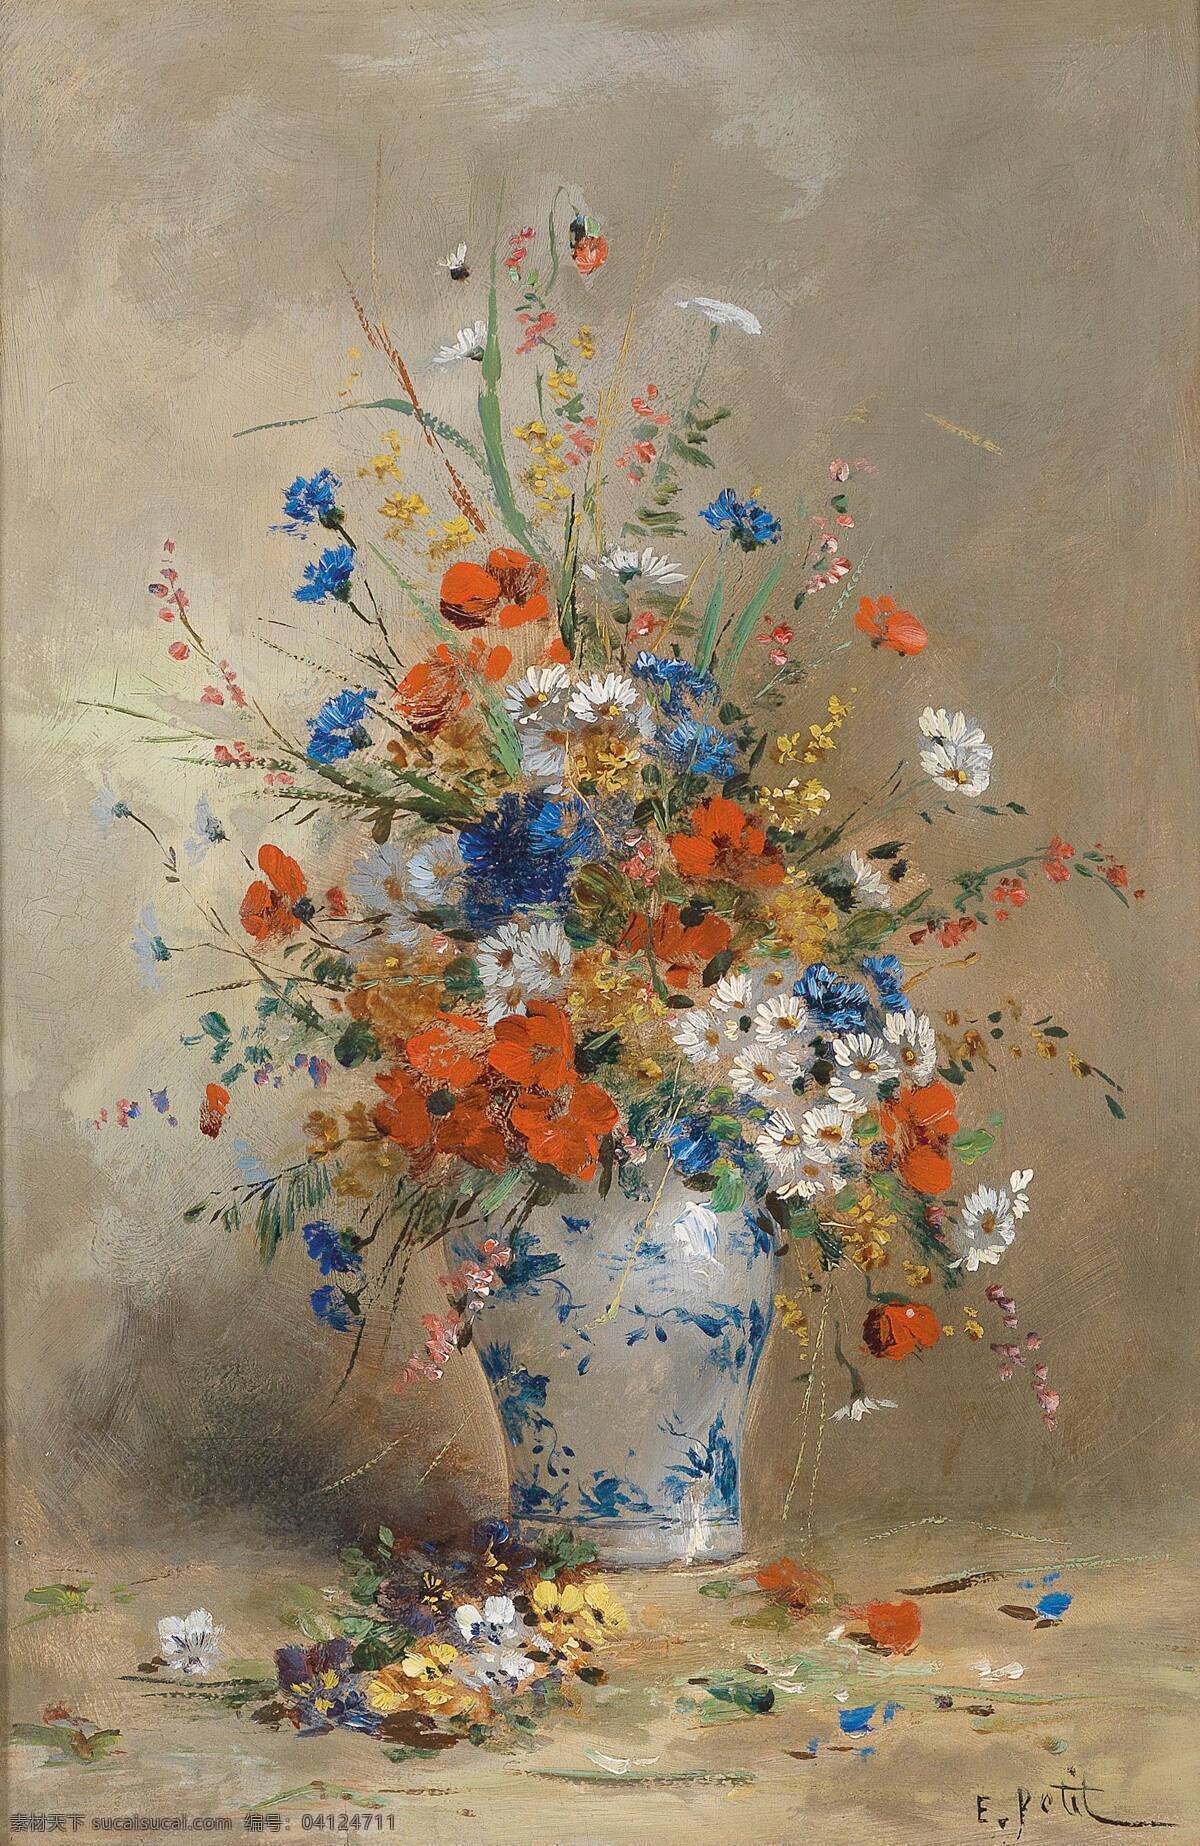 静物鲜花 混搭鲜花 永恒之美 蓝色条纹花瓶 墙 散落的花儿 19世纪油画 油画 绘画书法 文化艺术